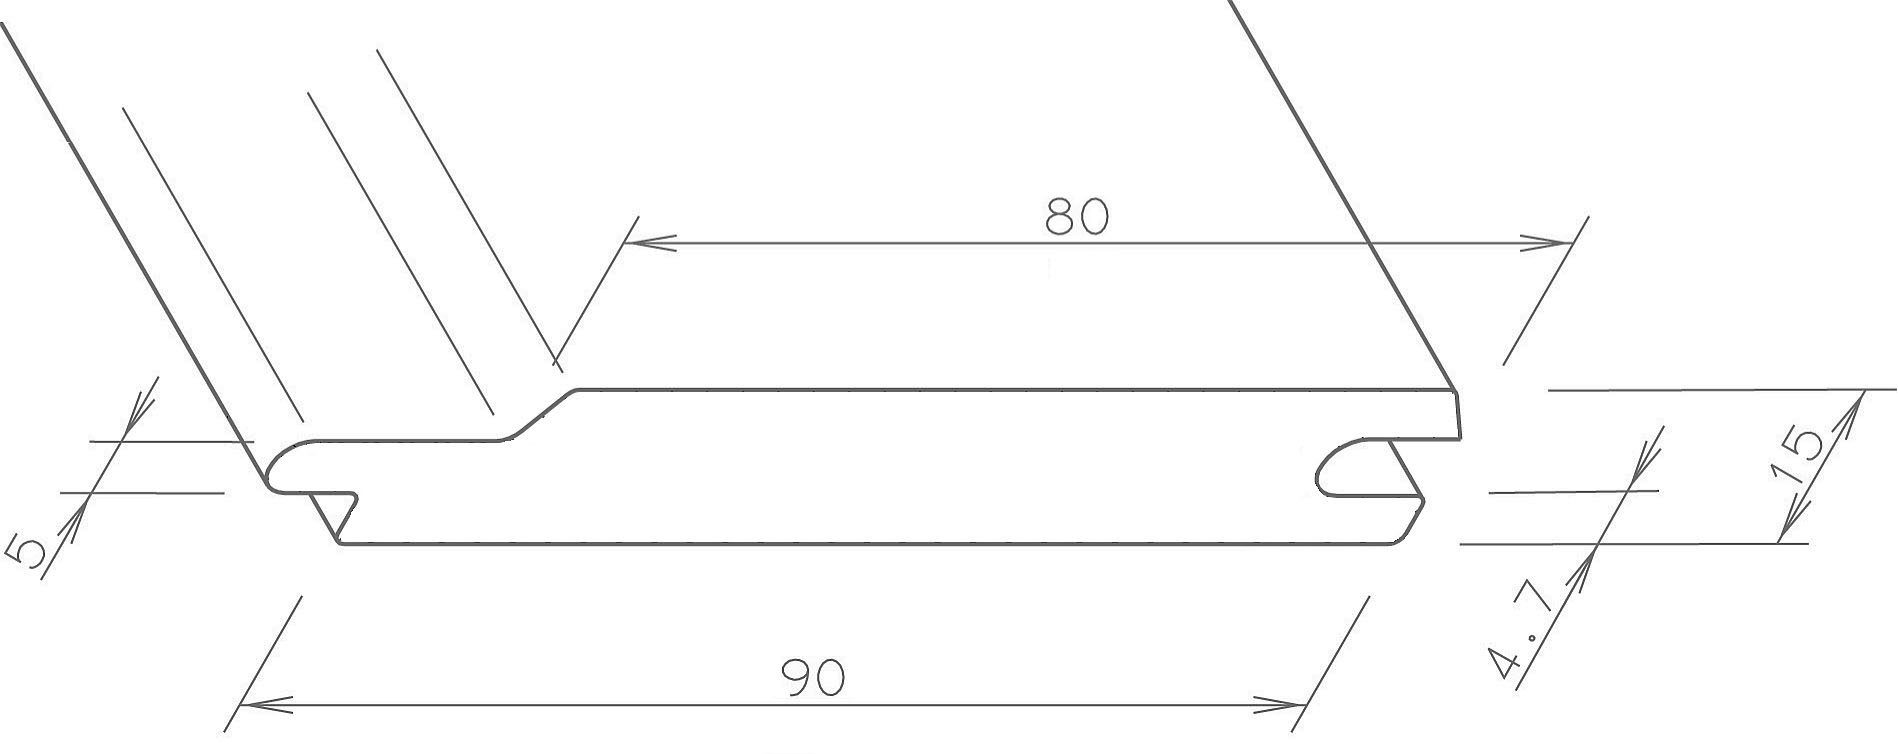 Tetzner & 10-tlg., Massive Jentzsch DB Verkleidungspaneel Federprofile, Massiv-Profil, BxL: einseitig m) 703 Kömapan 5,4 cm, alux 9x600 (Spar-Set, Nut und foliert